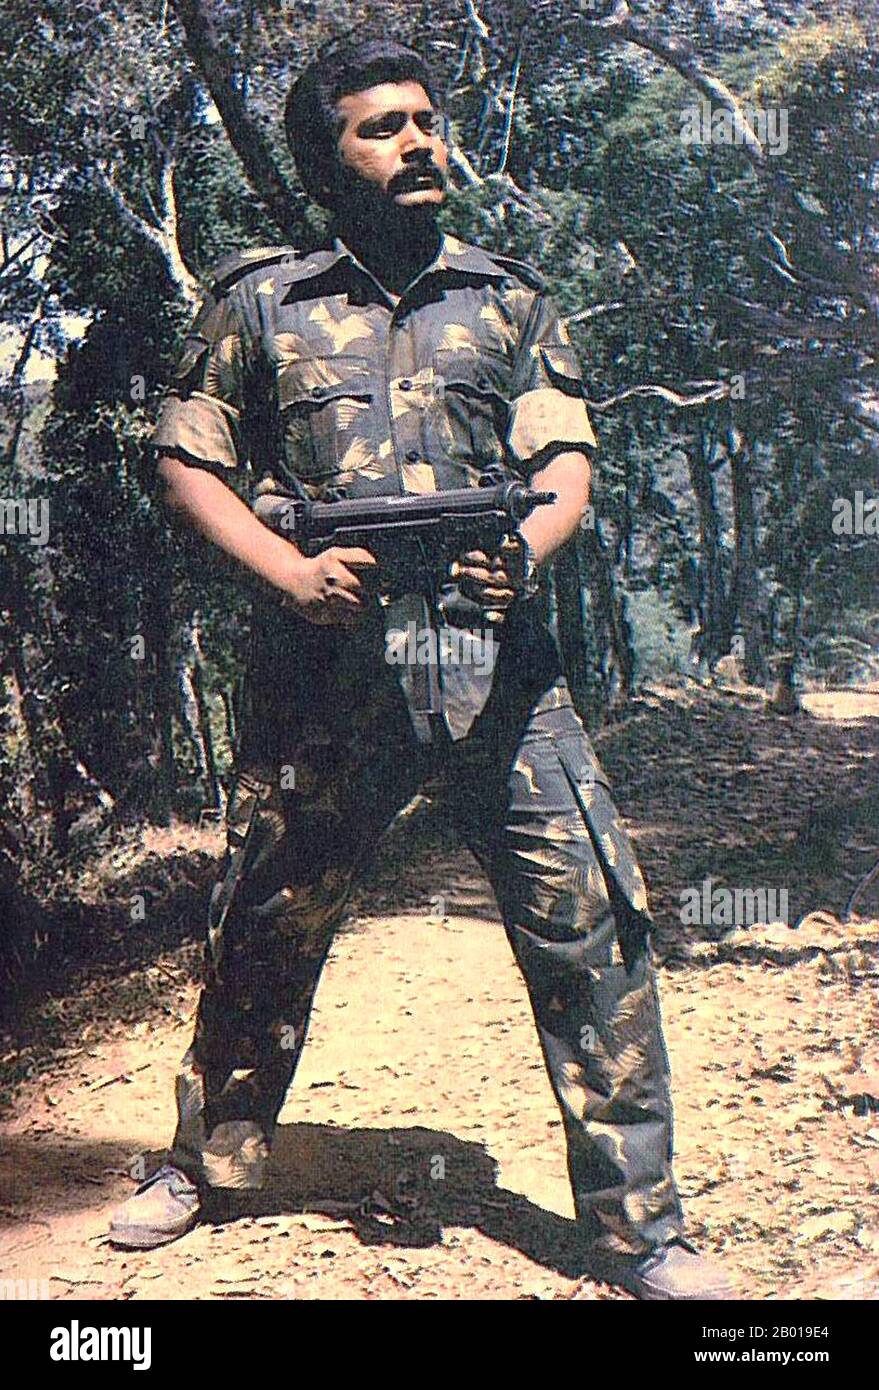 Sri Lanka: LTTE Comander Velupillai Prabhakaran (26 novembre 1954 - 18 mai 2009) posant avec une mitrailleuse quelque part dans le Wanni, dans le nord du Sri Lanka, c. 1985. Velupillai Prabhakaran était le fondateur et le chef des Tigres de libération de l'Eelam tamoul (les LTTE ou les Tigres tamouls), une organisation militante qui cherchait à créer un État tamoul indépendant dans le nord et l'est du Sri Lanka. Pendant plus de 25 ans, les LTTE ont mené une violente campagne sécessionniste au Sri Lanka qui l'a désignée organisation terroriste par 32 pays. Banque D'Images